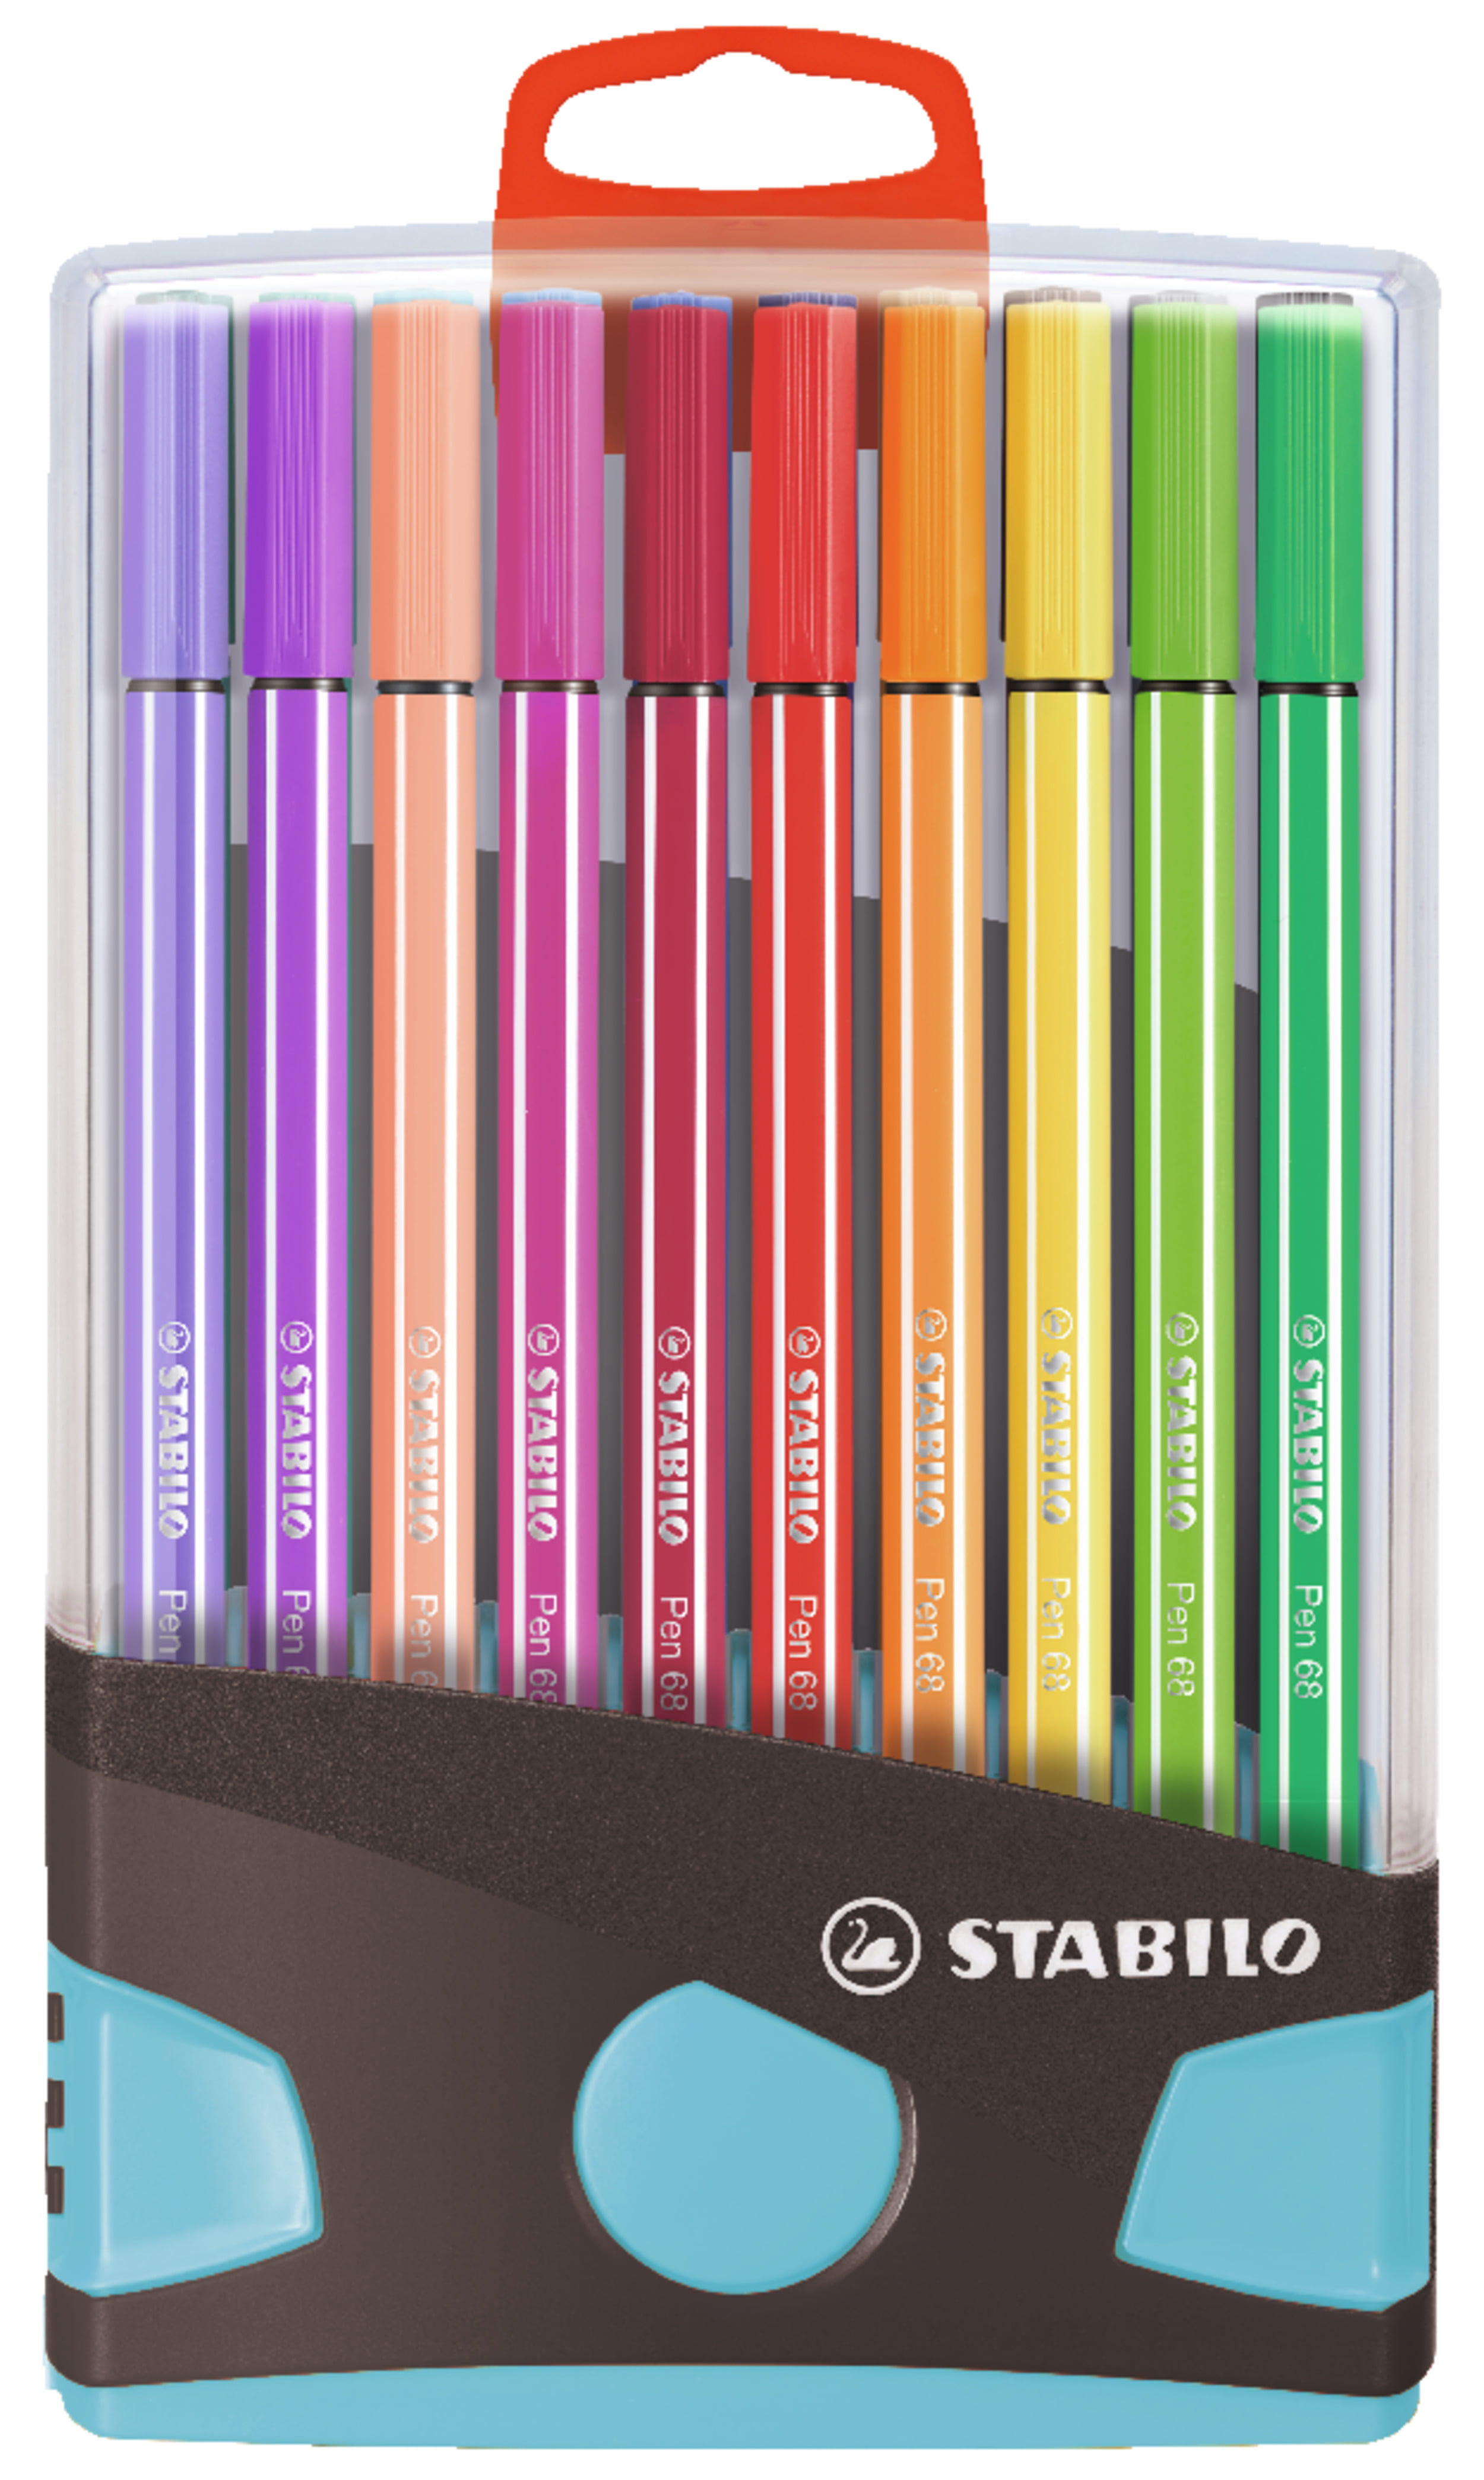 STABILO Pen Color Marker Set, 20-Colors, Hang Tag Pkg. - Walmart.com